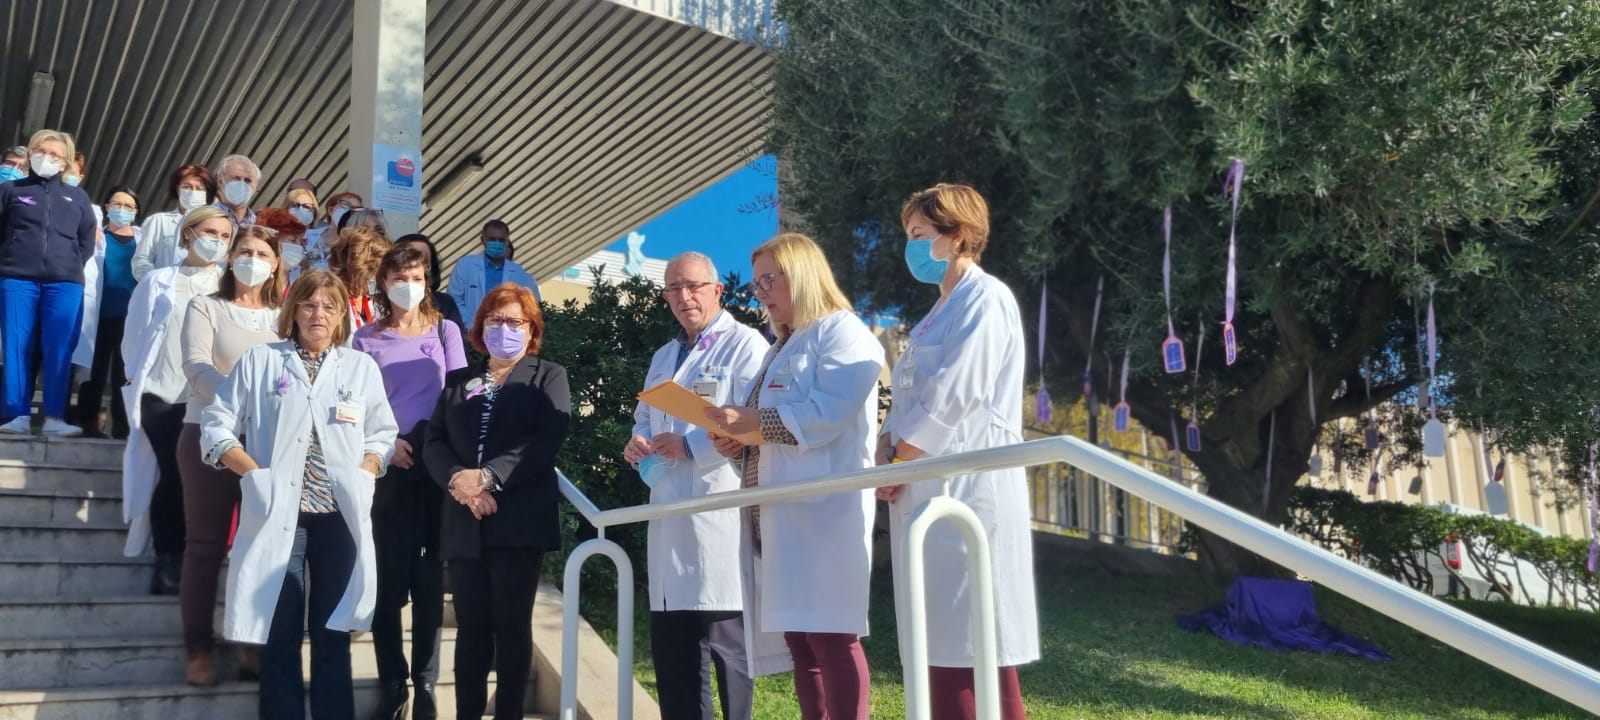 La directora d'infermeria del departament llegint un manifest, en les escales d'entrada a l'hospital, al costat del direcció del centre i els assistents